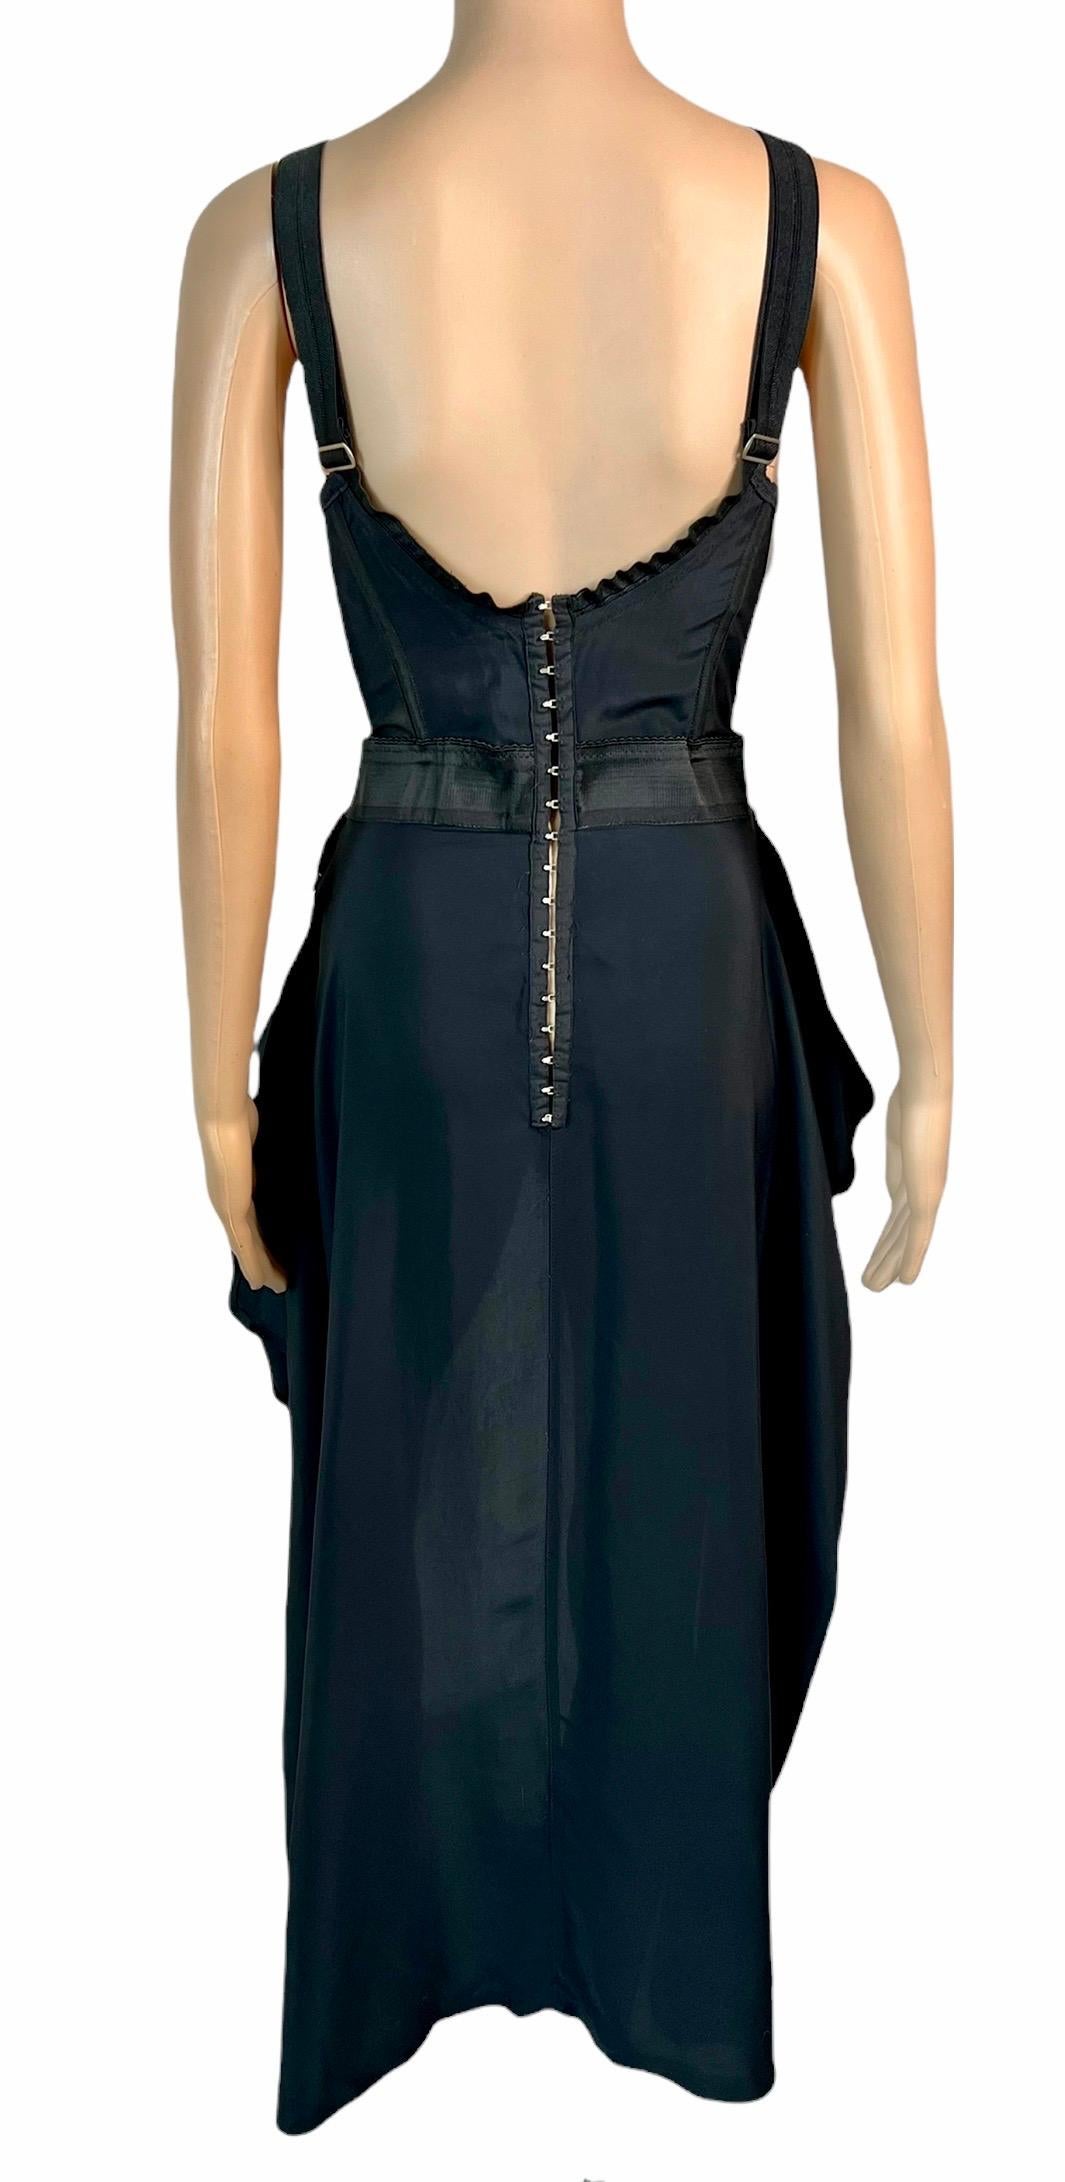 Jean Paul Gaultier S/S 1992 Runway Bra Corset Sheer Panels Black Evening Dress For Sale 6